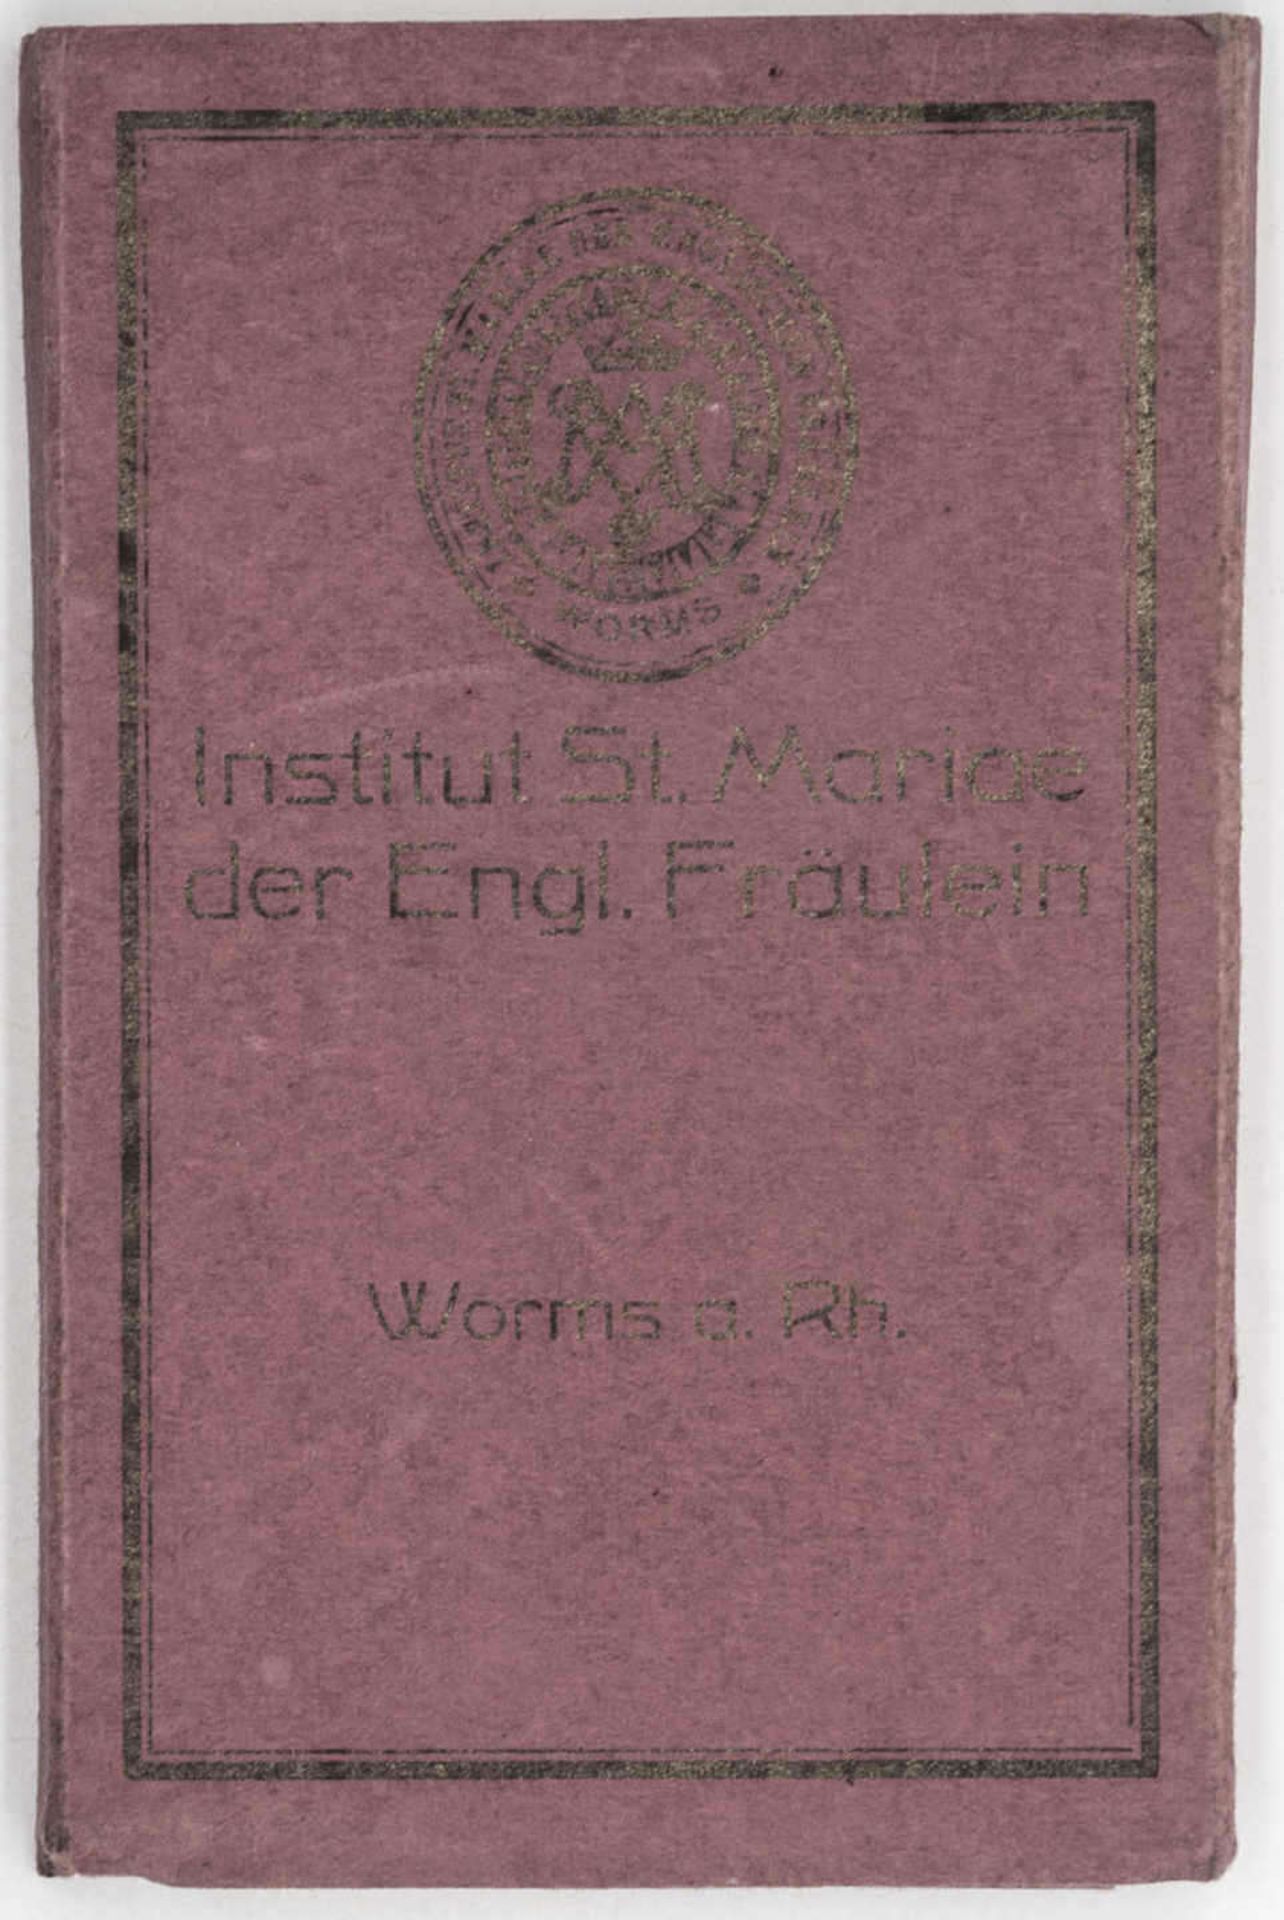 Institut St. Mariae der Engl. Fräulein Worms a, Rhein. Leporello - Postkarten. Orig.